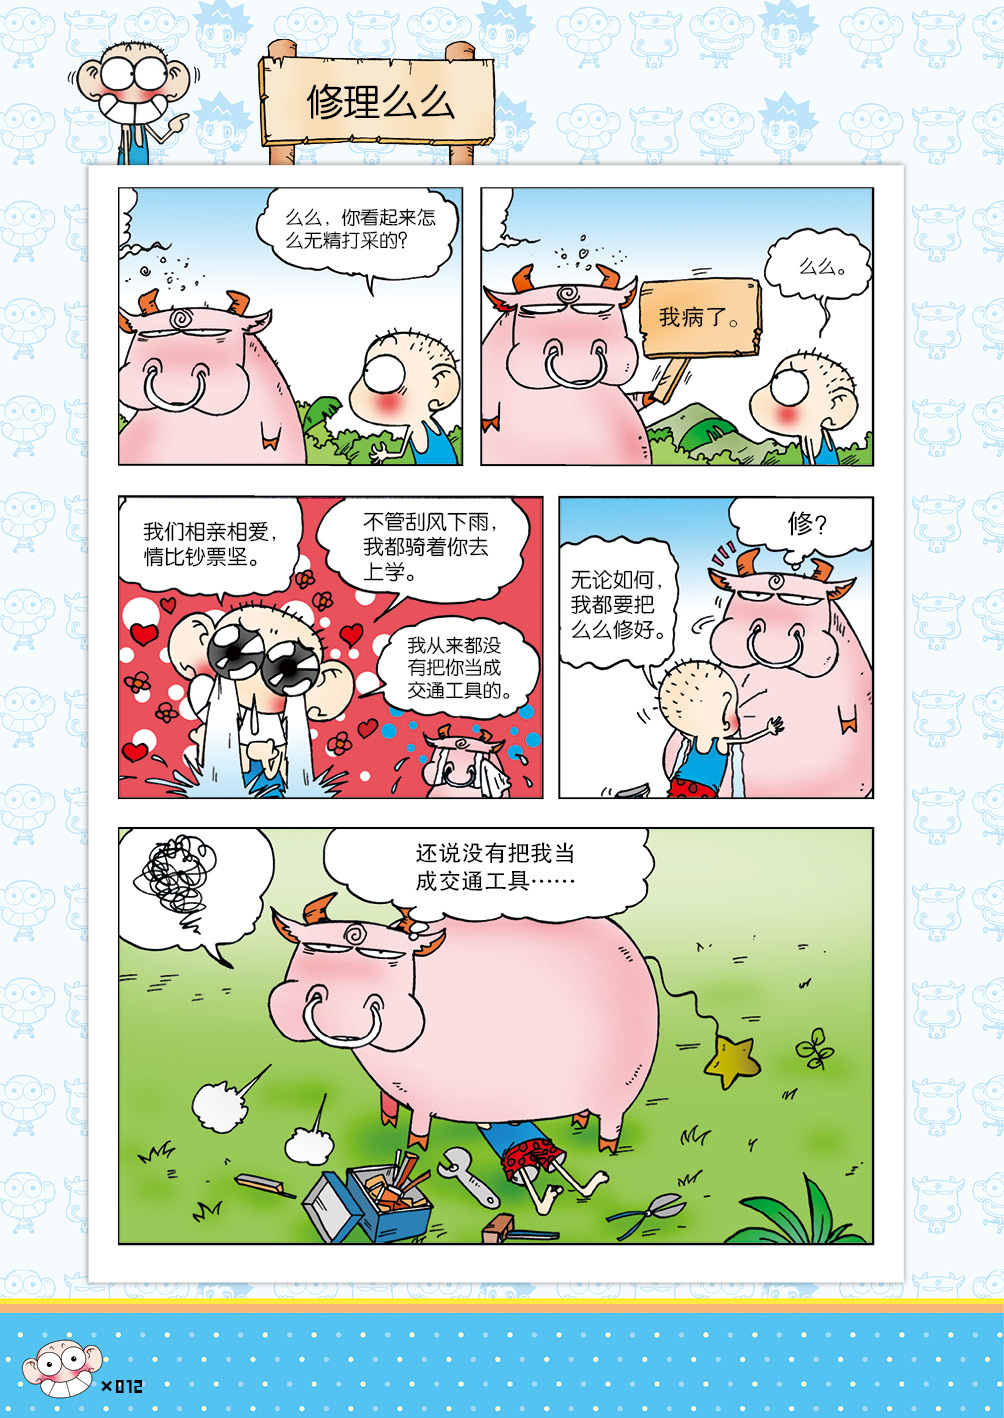 朱斌漫画精选集07-P001-035vjpg12.jpg